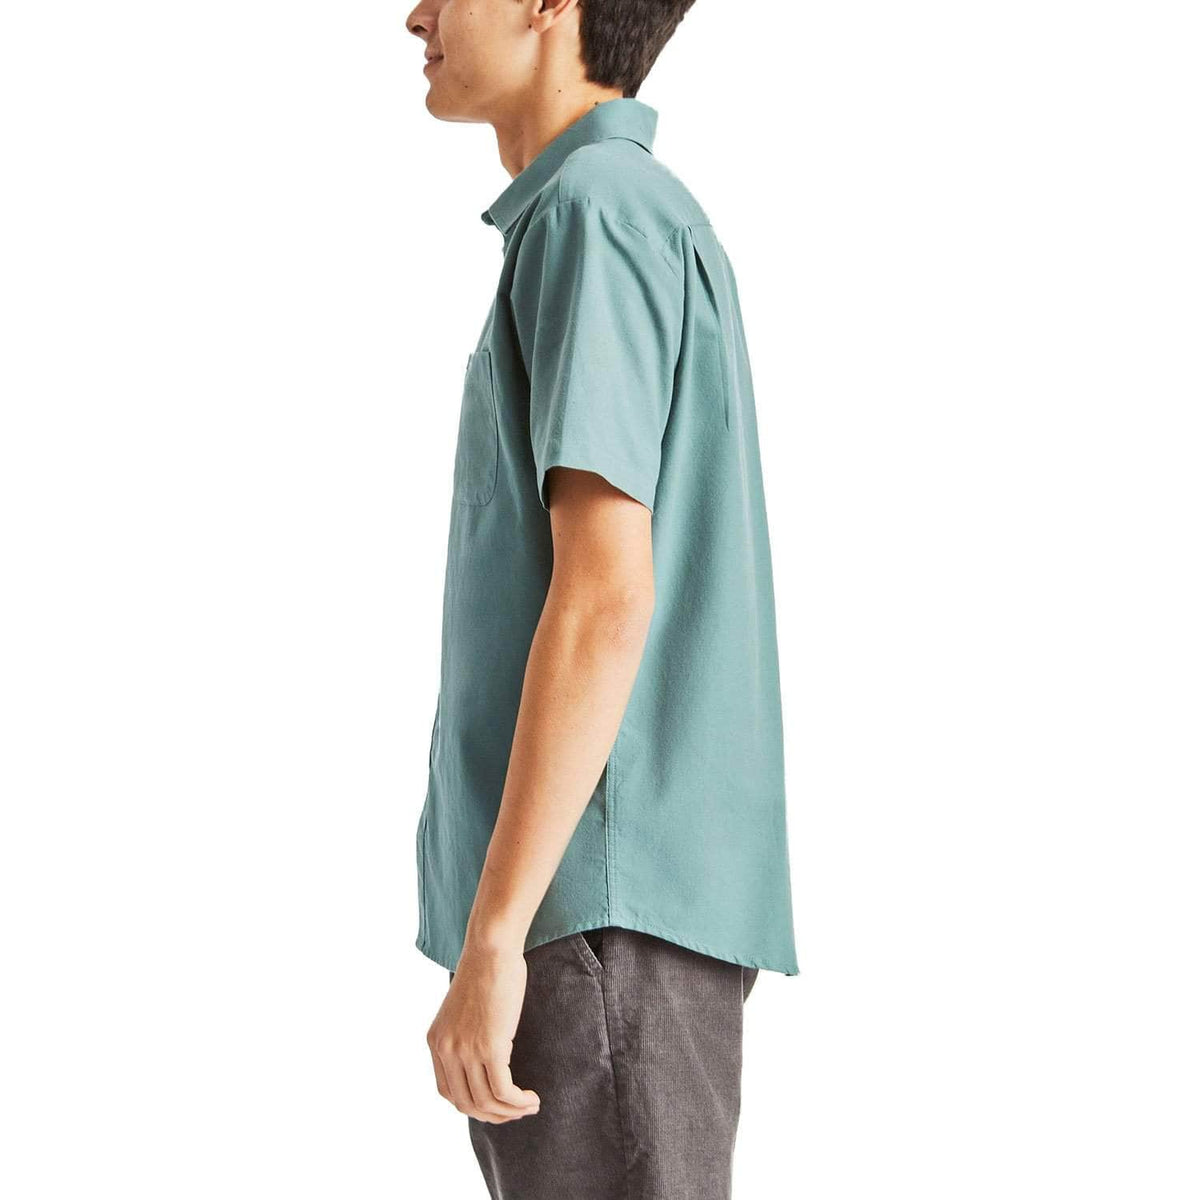 Brixton Charter Oxford Short Sleeve Shirt - Jade - Mens Casual Shirt by Brixton